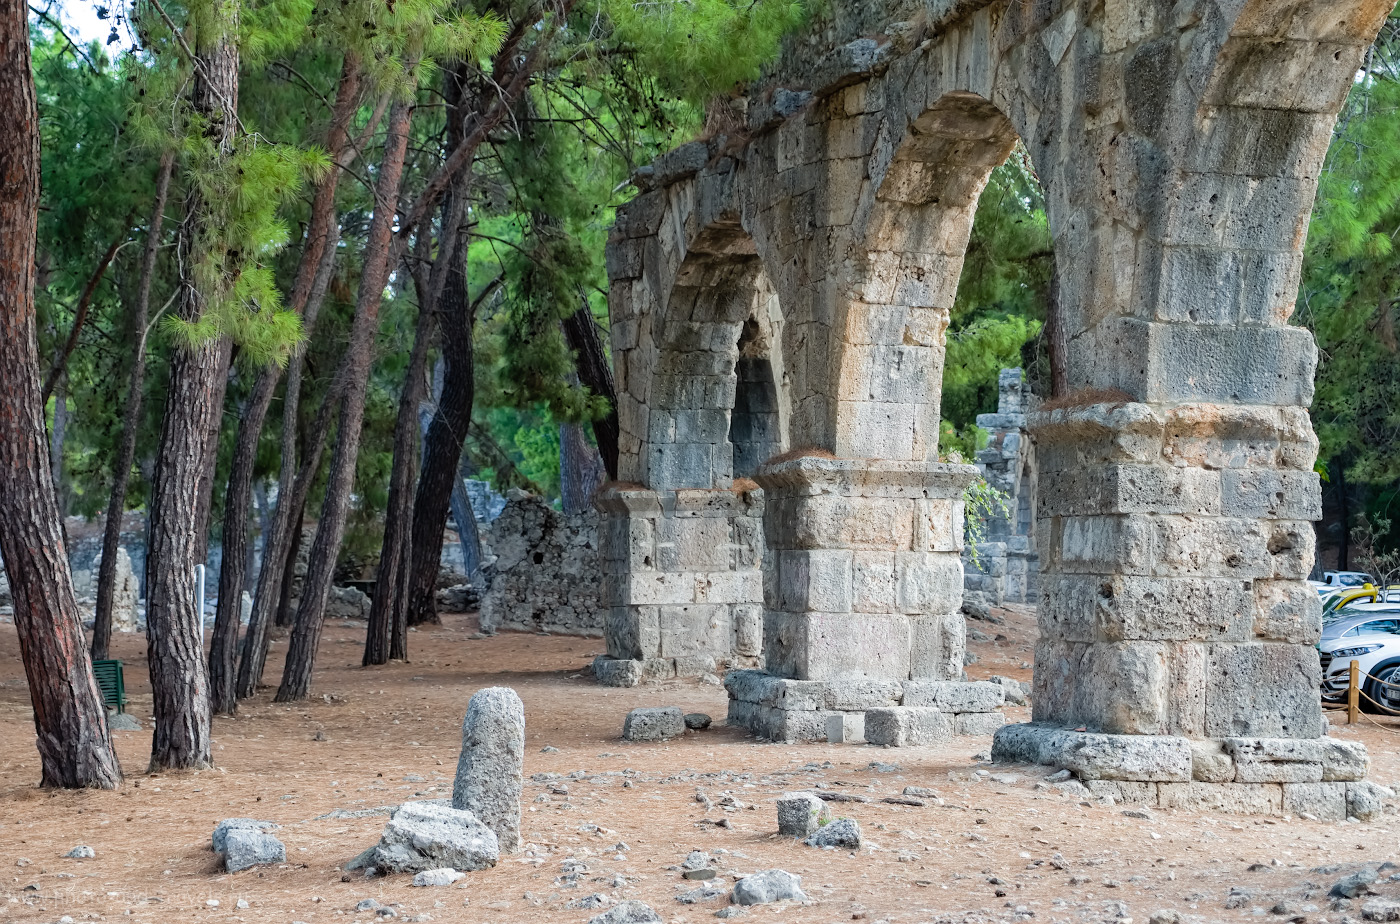 Фото 5. Остатки акведука в древнем городе Фаселис в Турции. 1/250, 2.8, 320, 45.